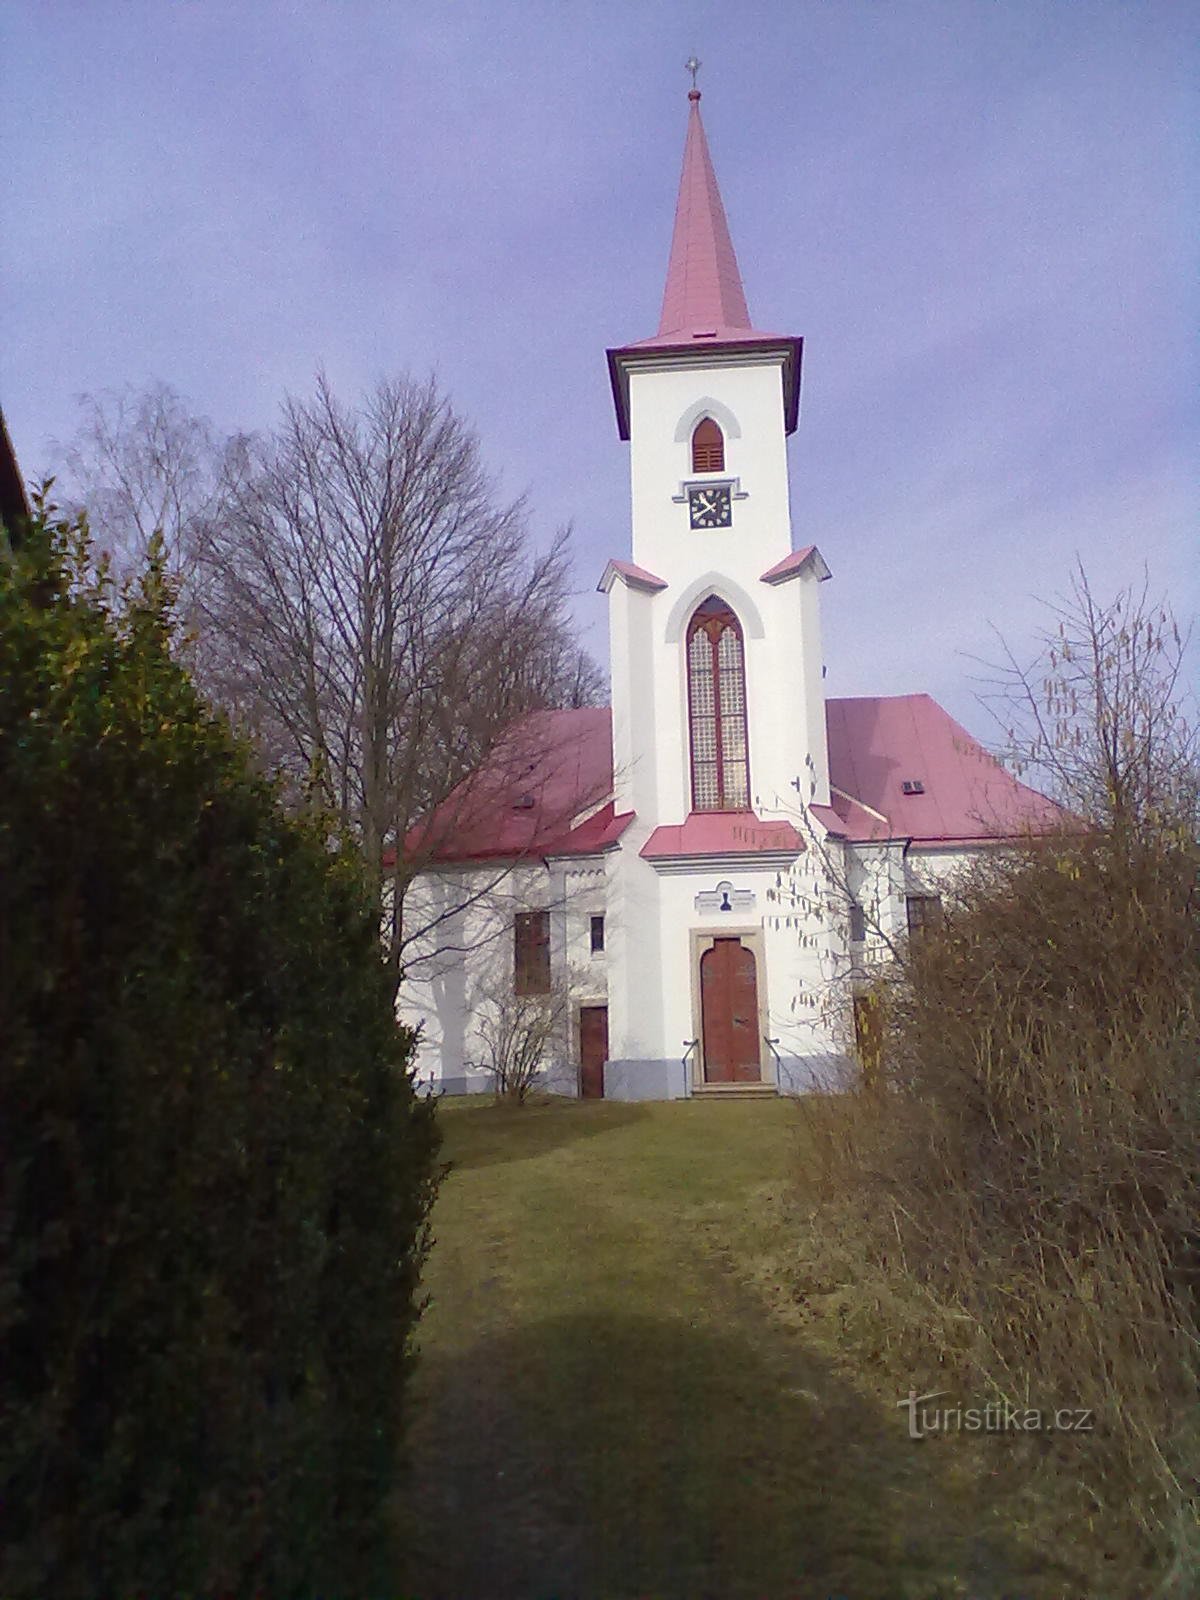 2. Evangelical church in Moravč from 1785.